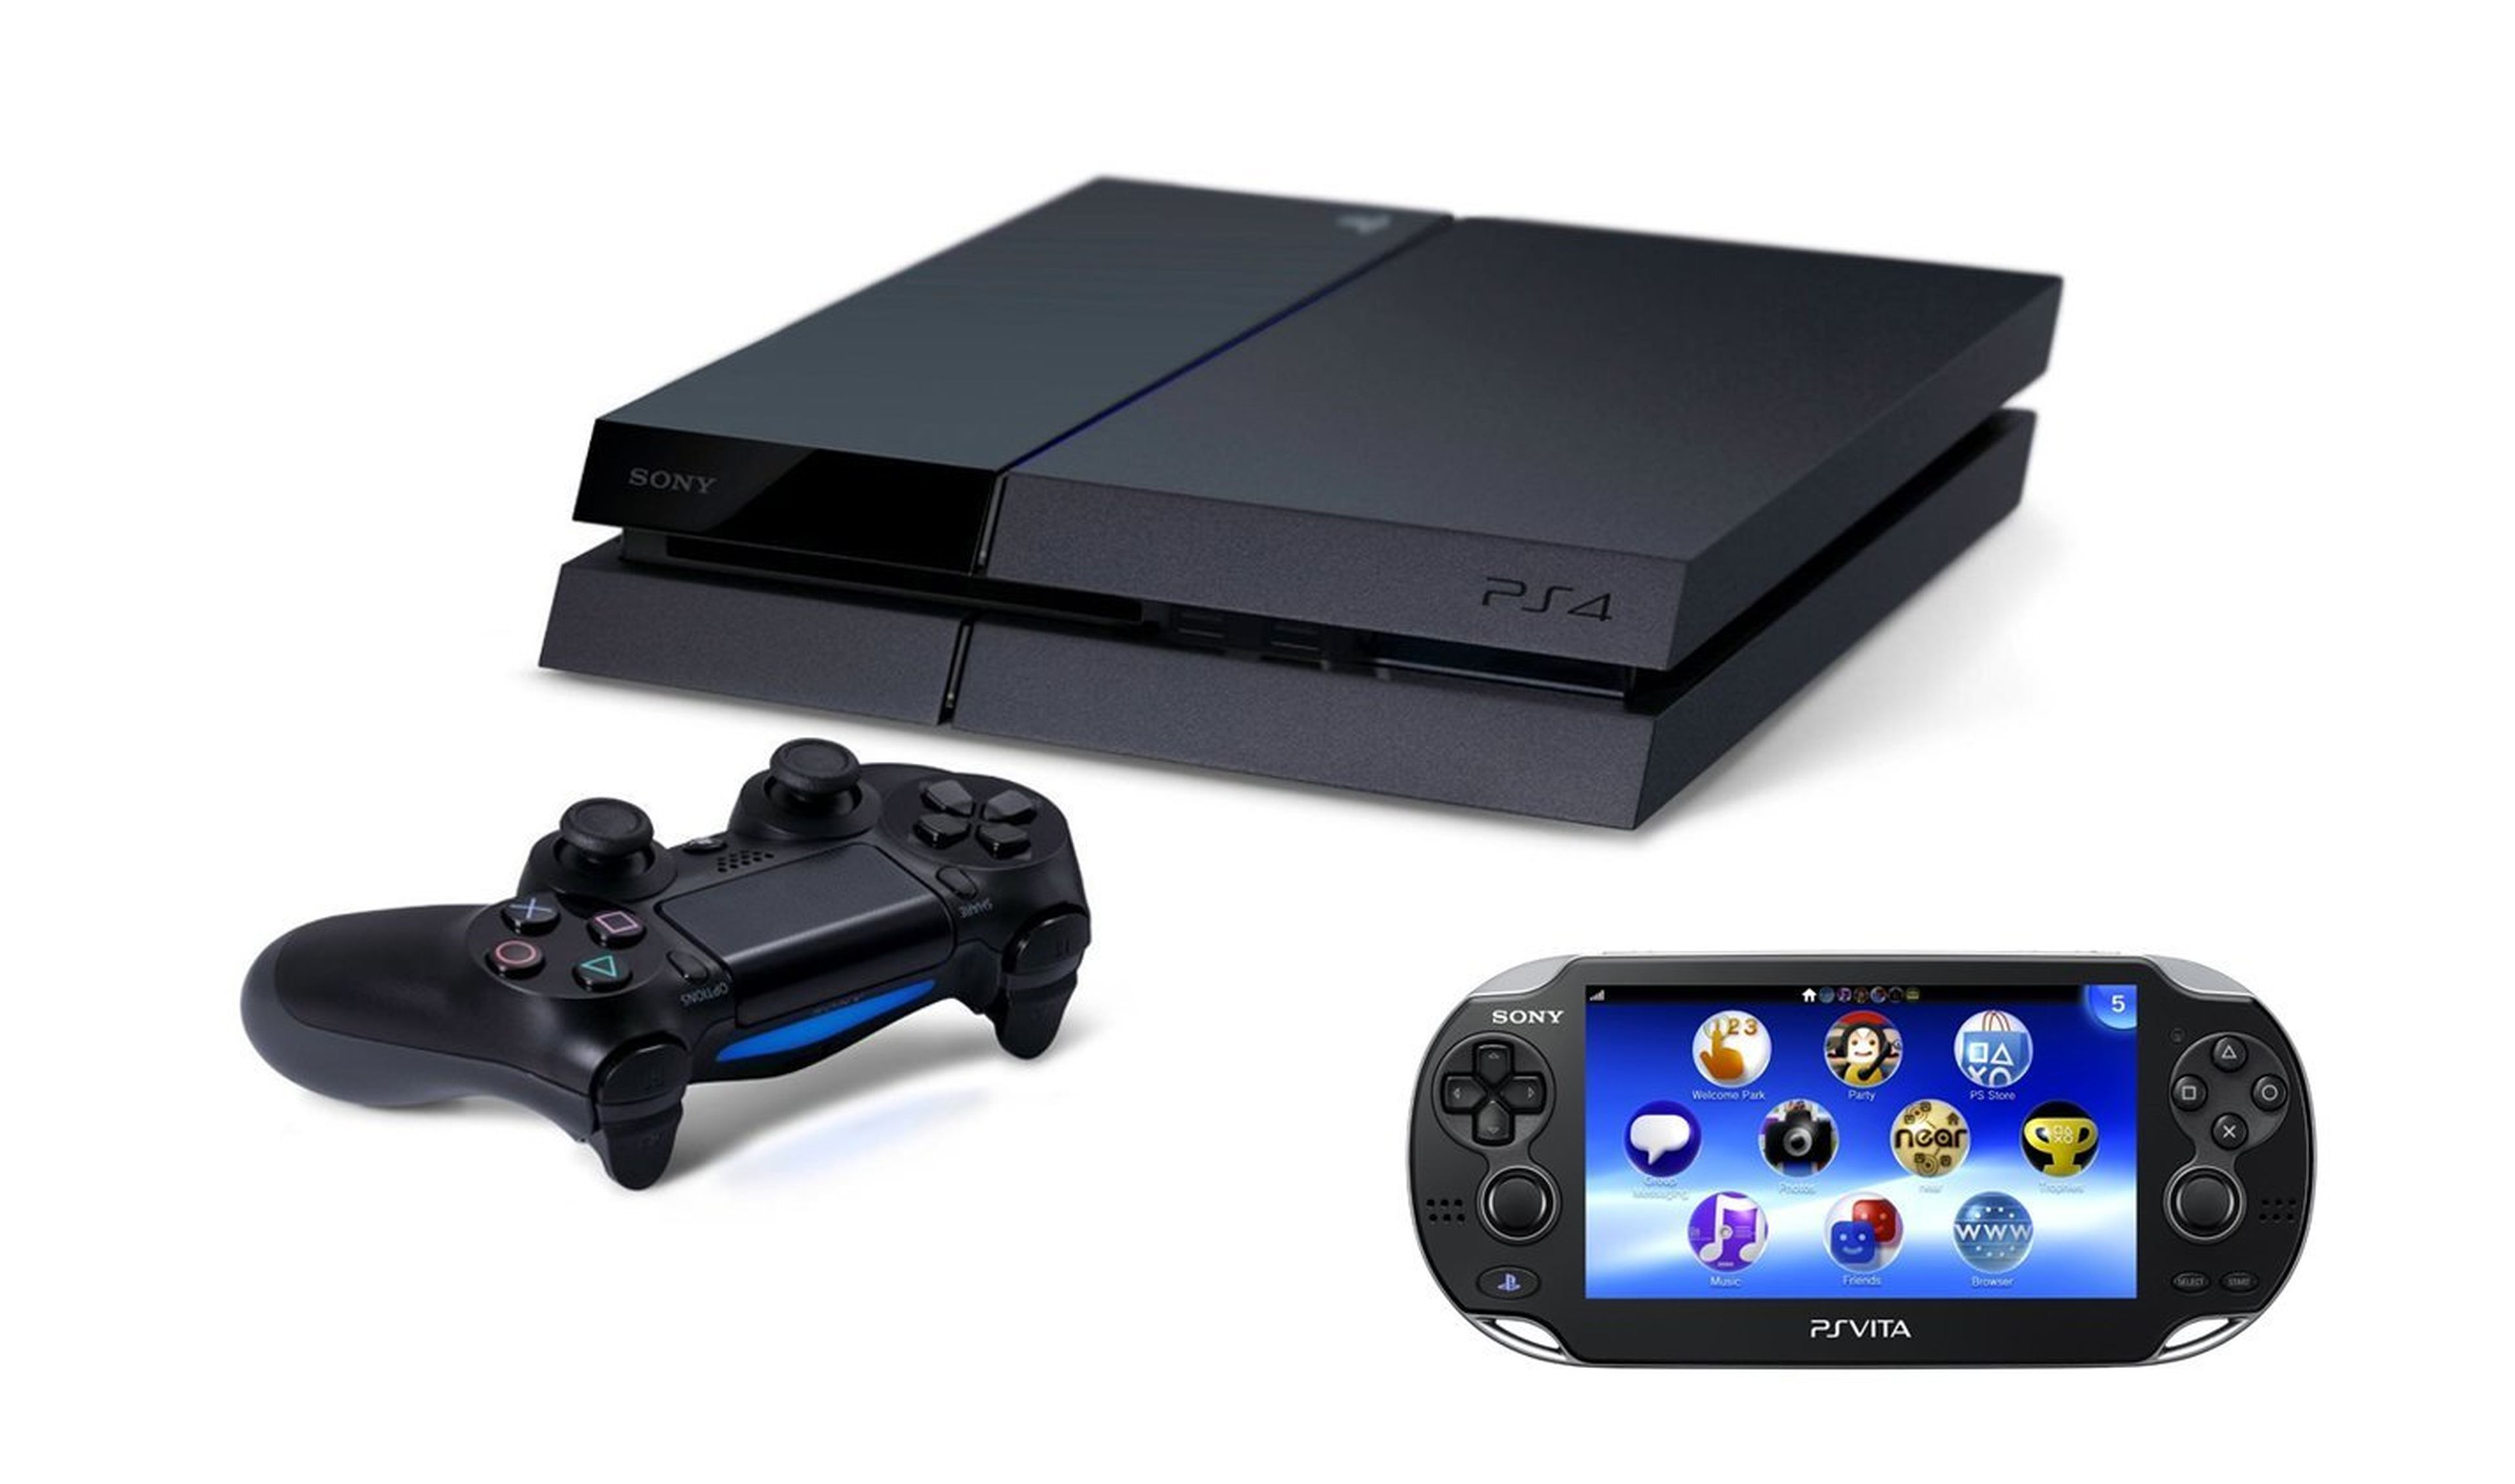 Filtrado el pack de PlayStation 4 con PlayStation Vita